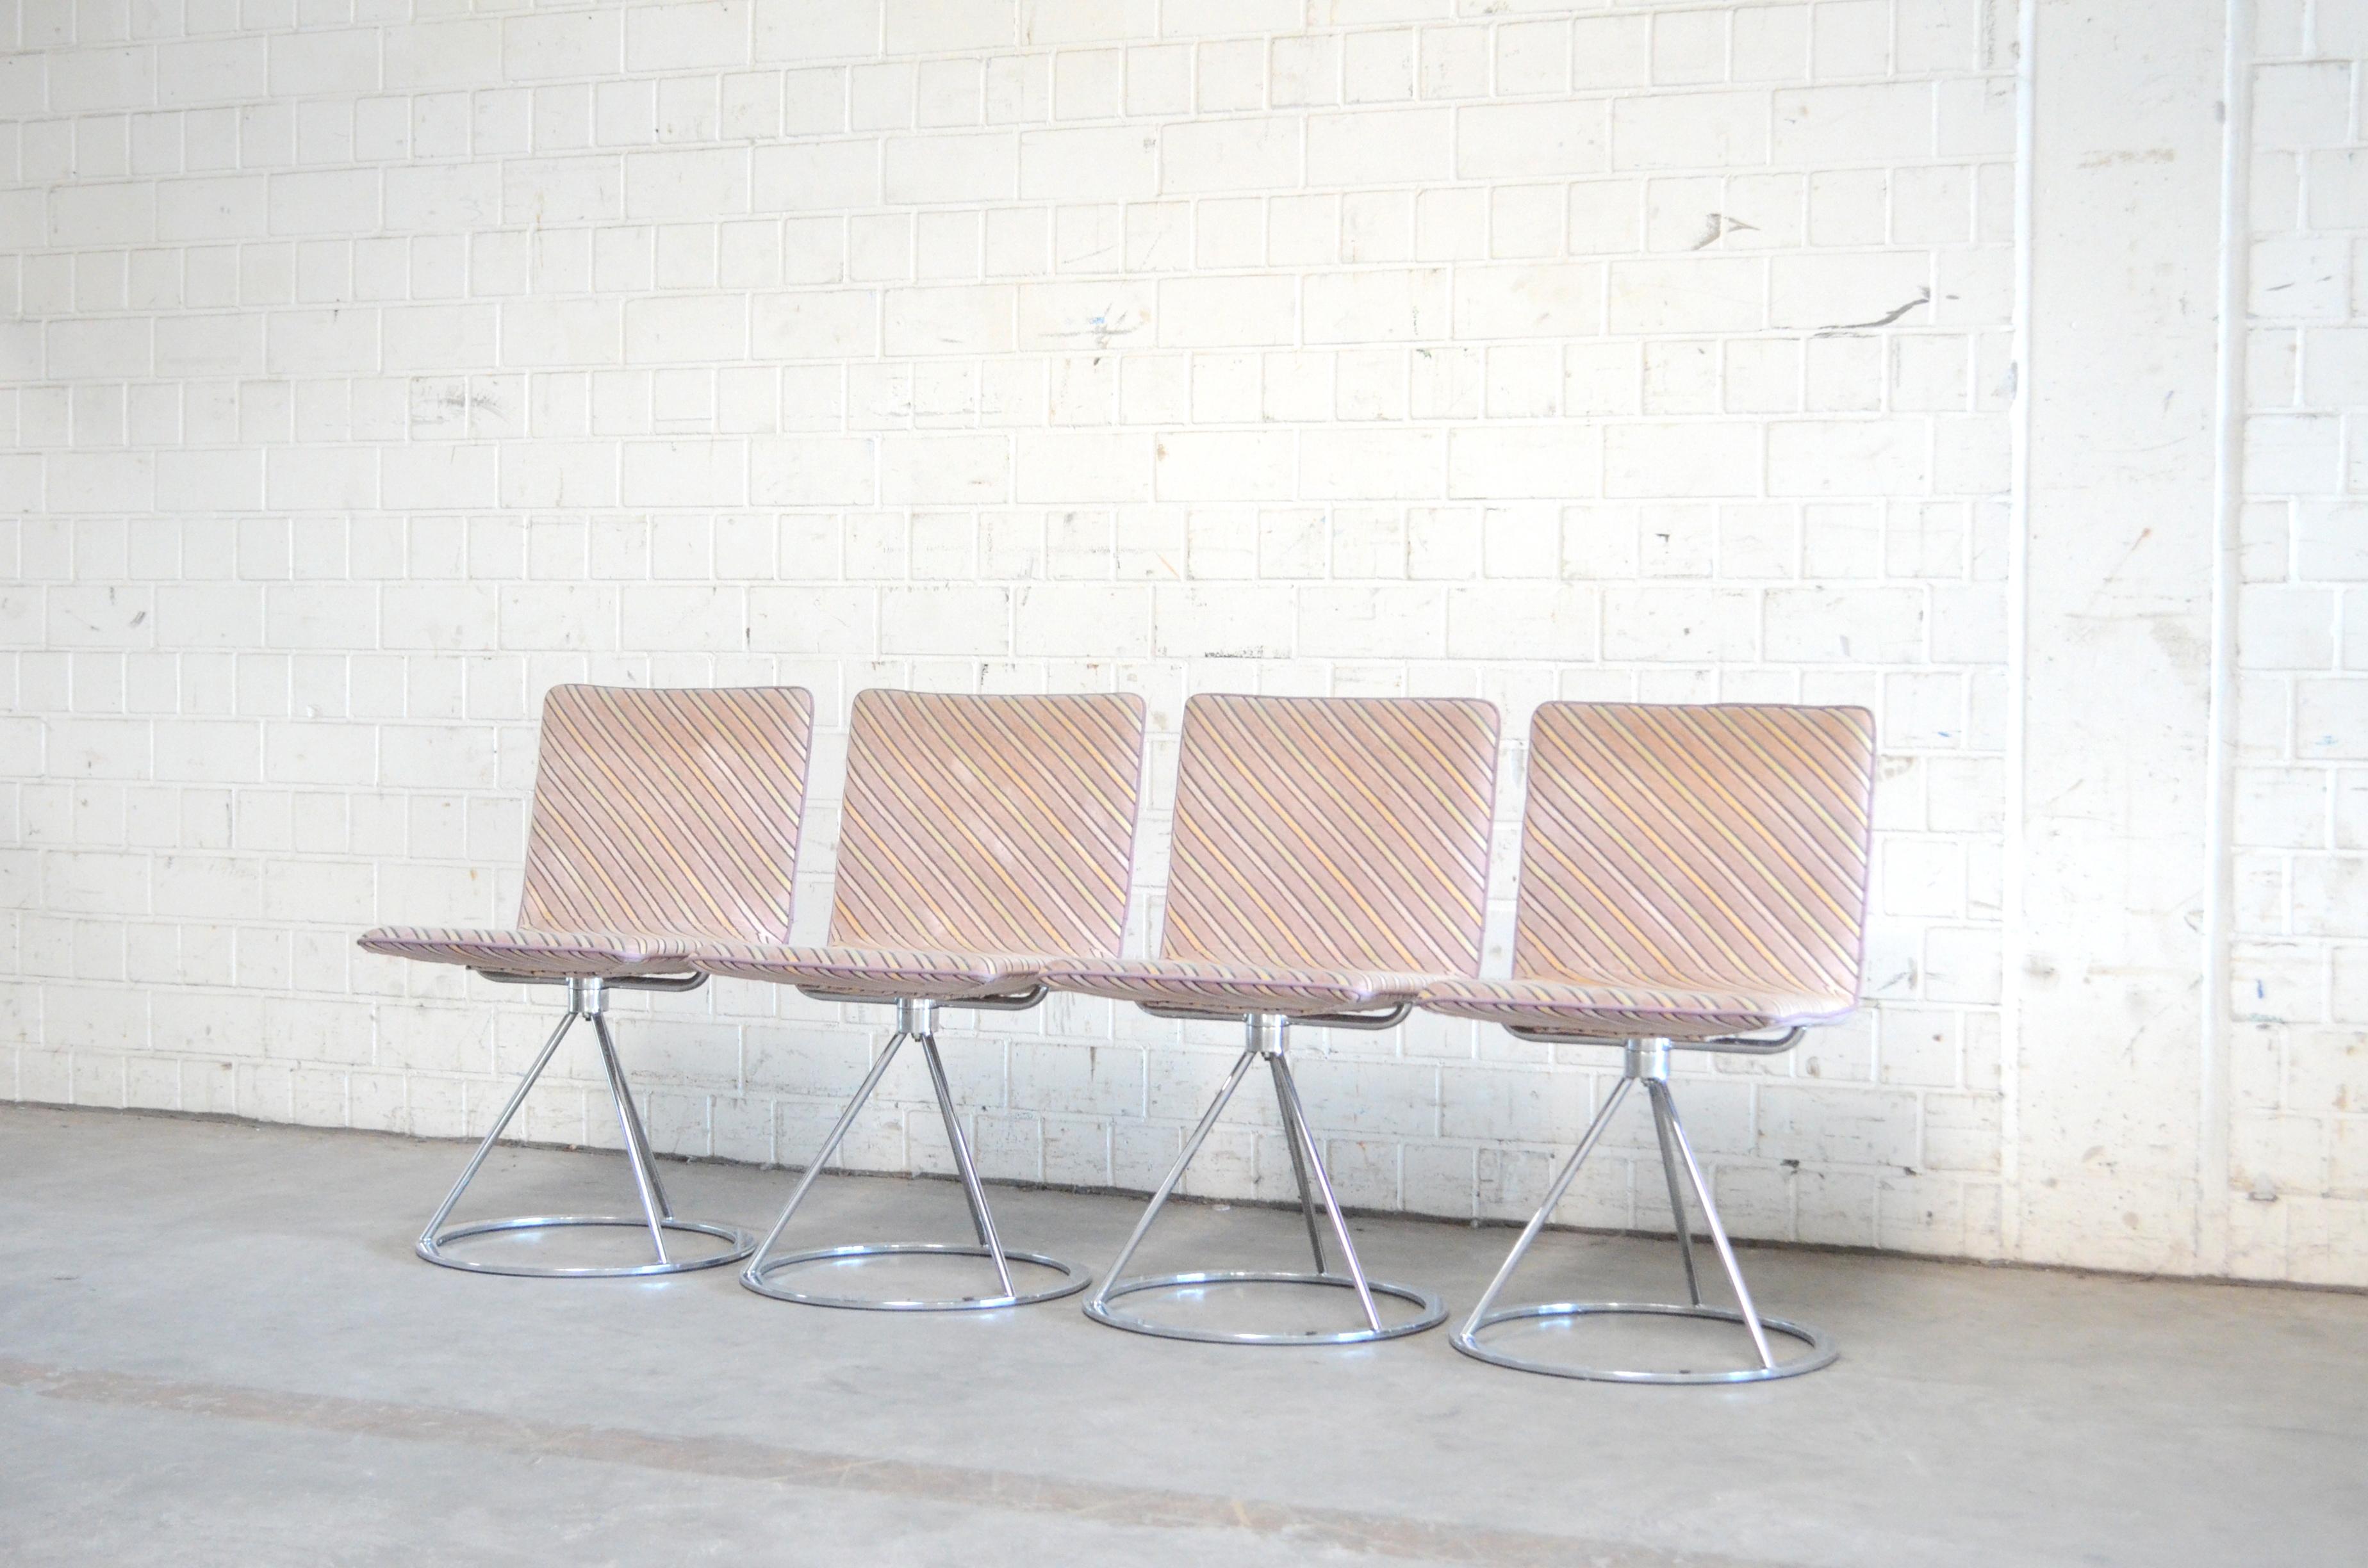 Diese italienischen Designstühle stammen aus den 1980er Jahren und wurden von Salvati e Tresoldi entworfen und von Saporiti Italia hergestellt.
Ein zeitgenössischer Designstuhl mit drehbarem verchromtem Stahlgestell und gepolstertem Sitz.
Der